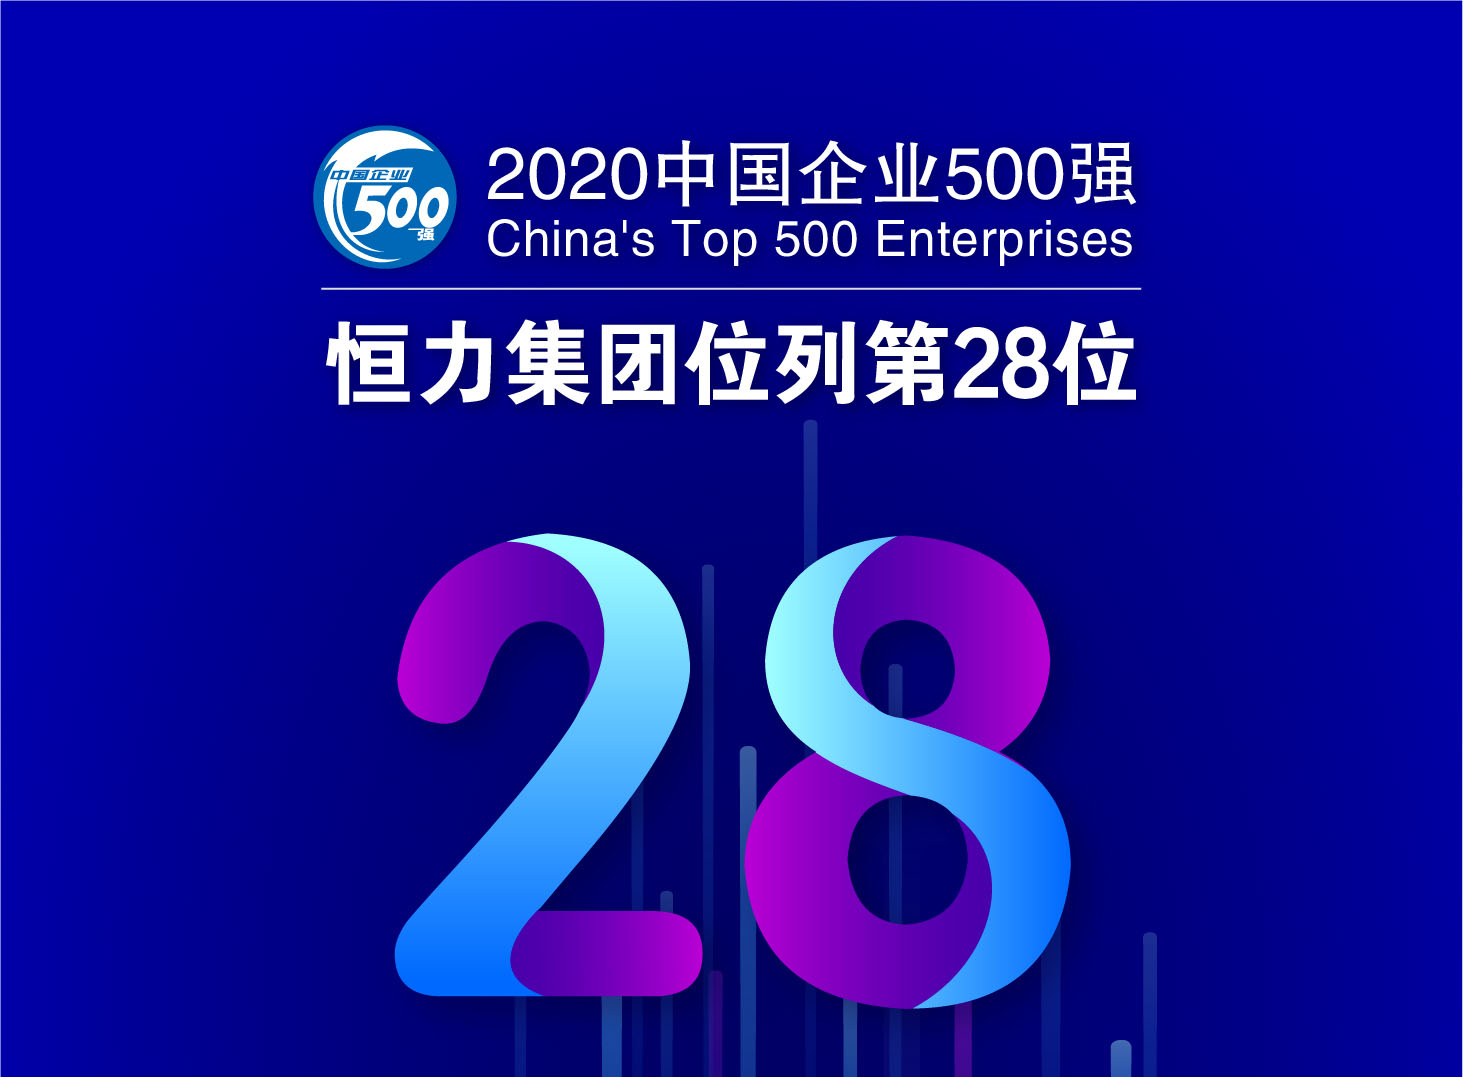 恒力集团跃升至中国企业500强第28位